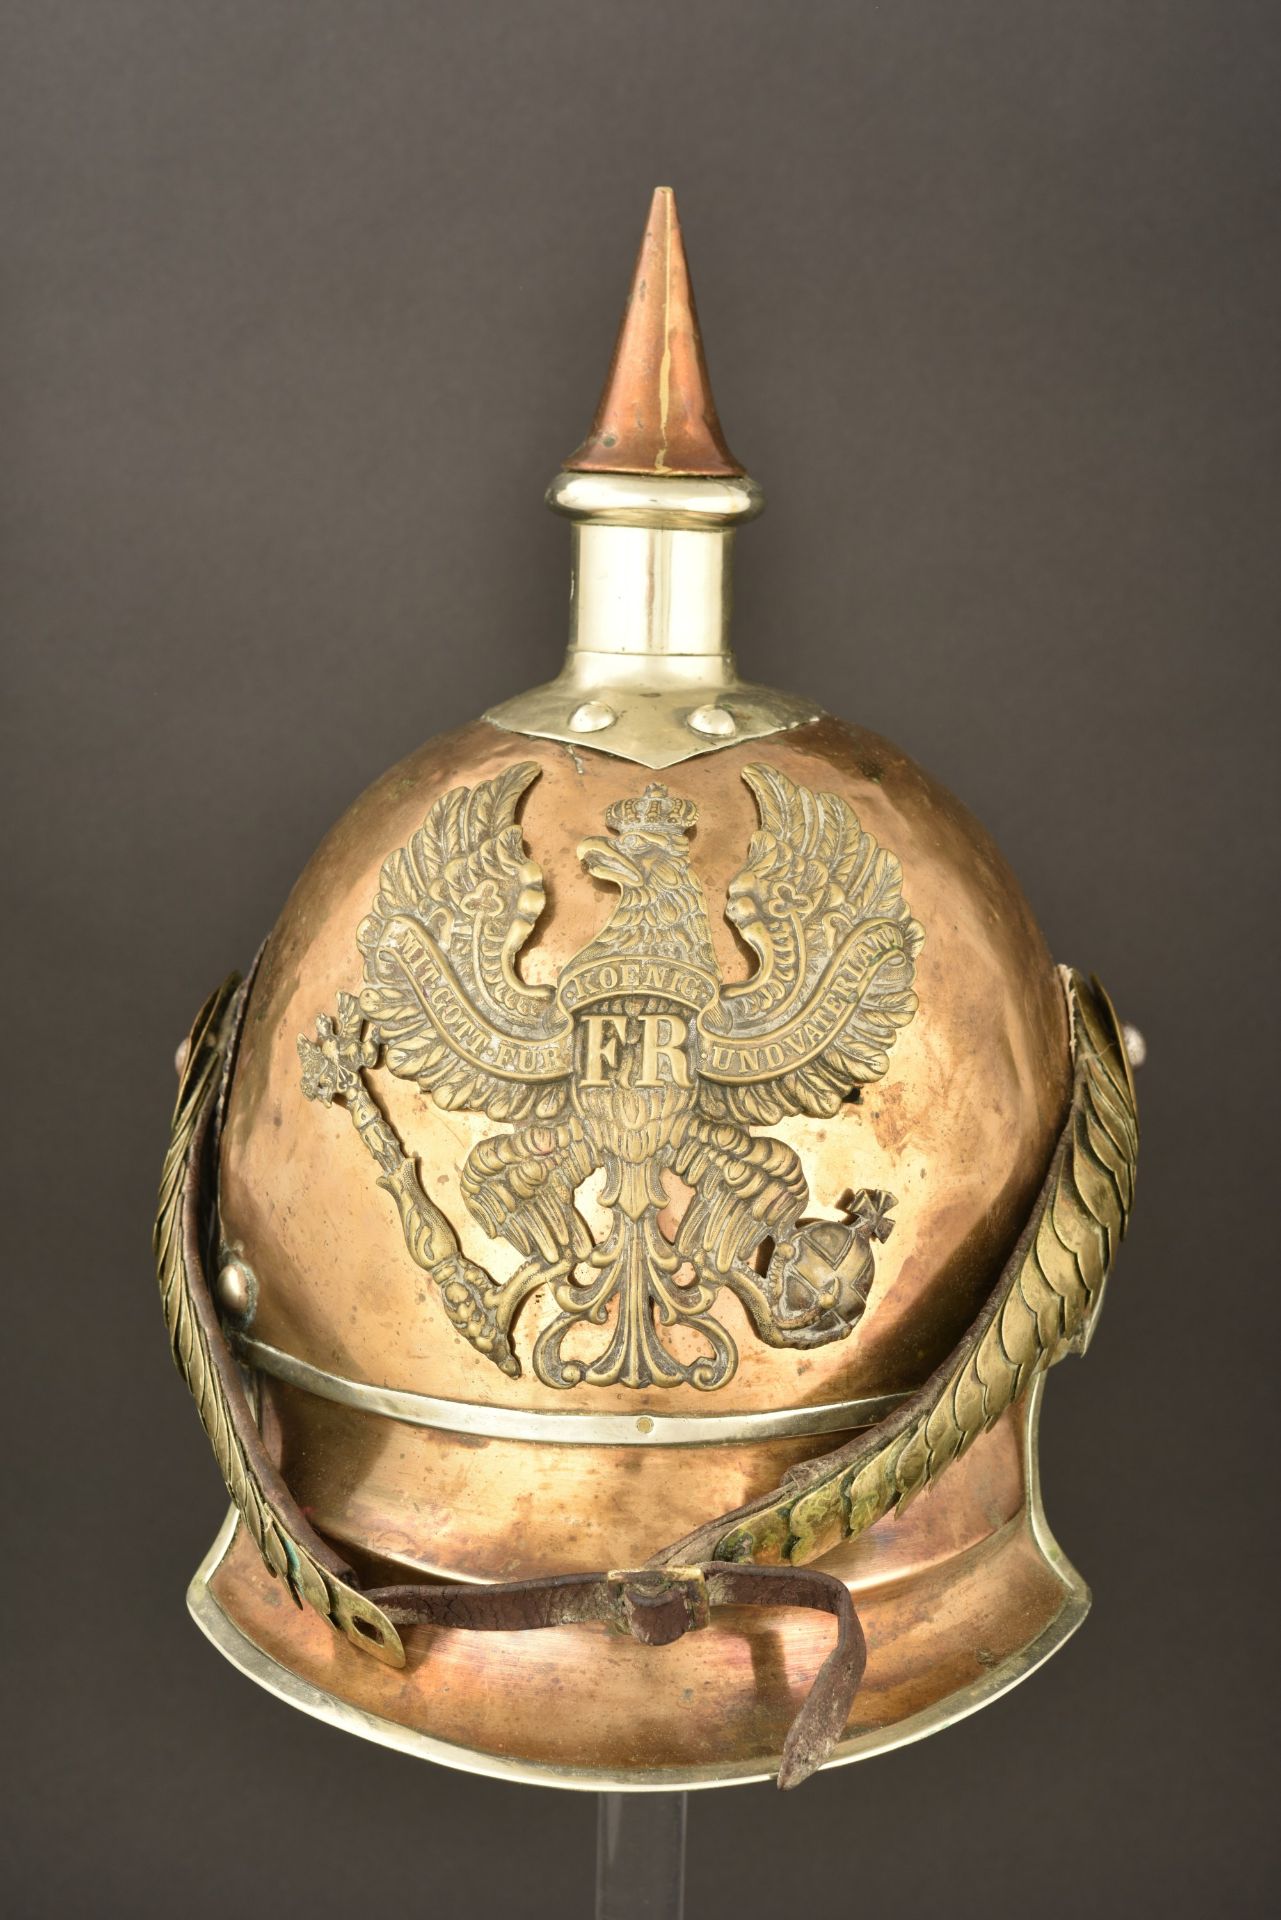 Casque de Garde du Corps modele 1862 67. Prussian Garde du Corps spiked helmet pattern 1862. Garde d